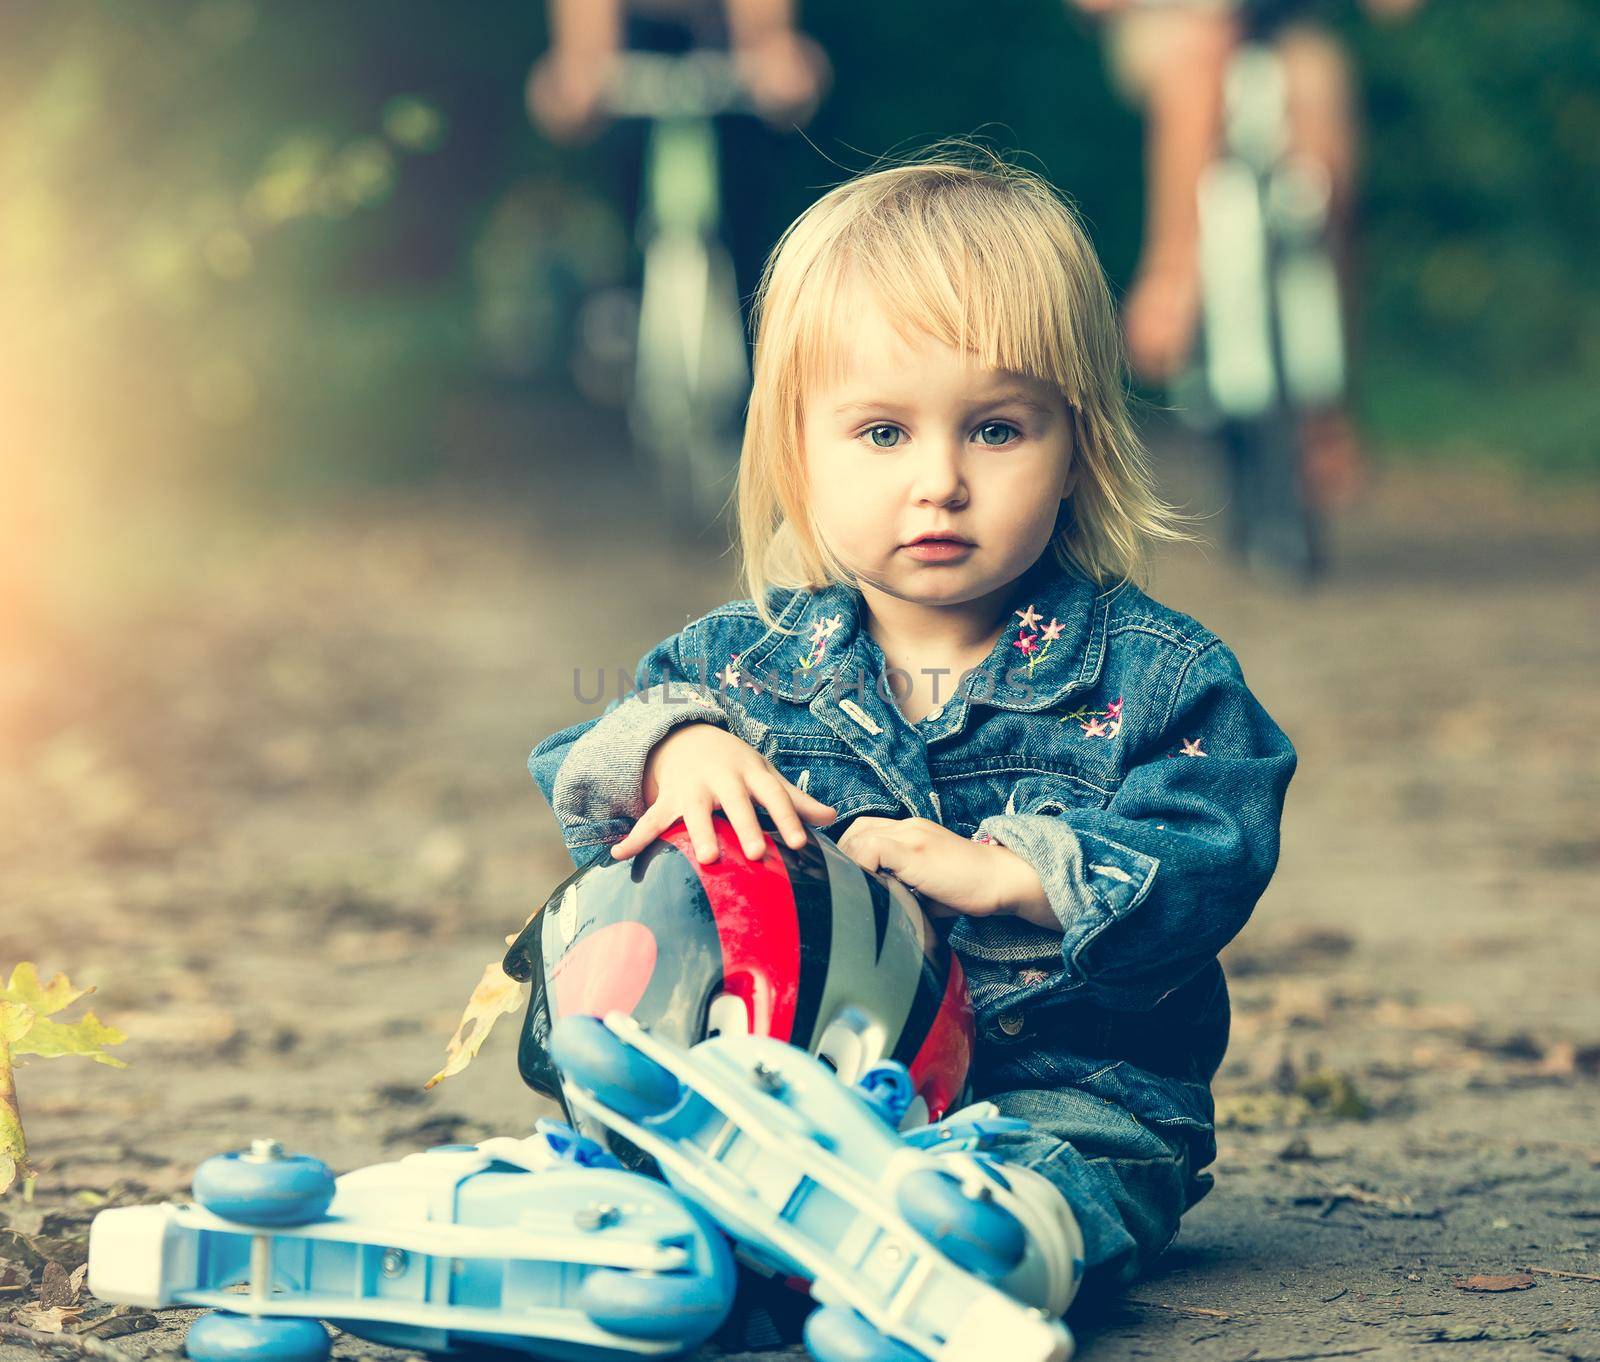 little girl on roller skates by GekaSkr